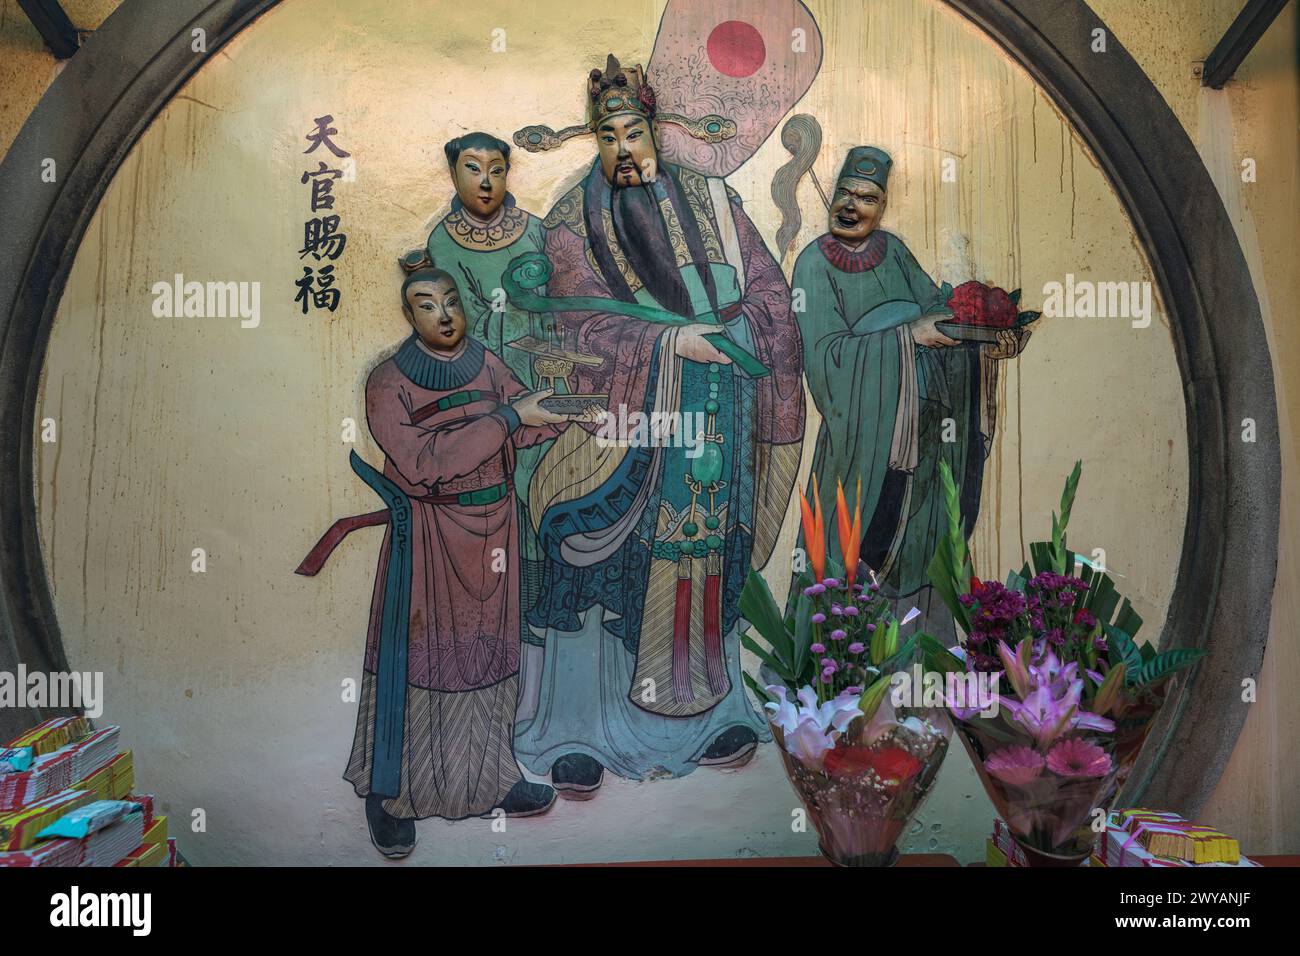 Traditionelles asiatisches religiöses Wandgemälde mit mythologischen Figuren in lebhaften Farben Stockfoto